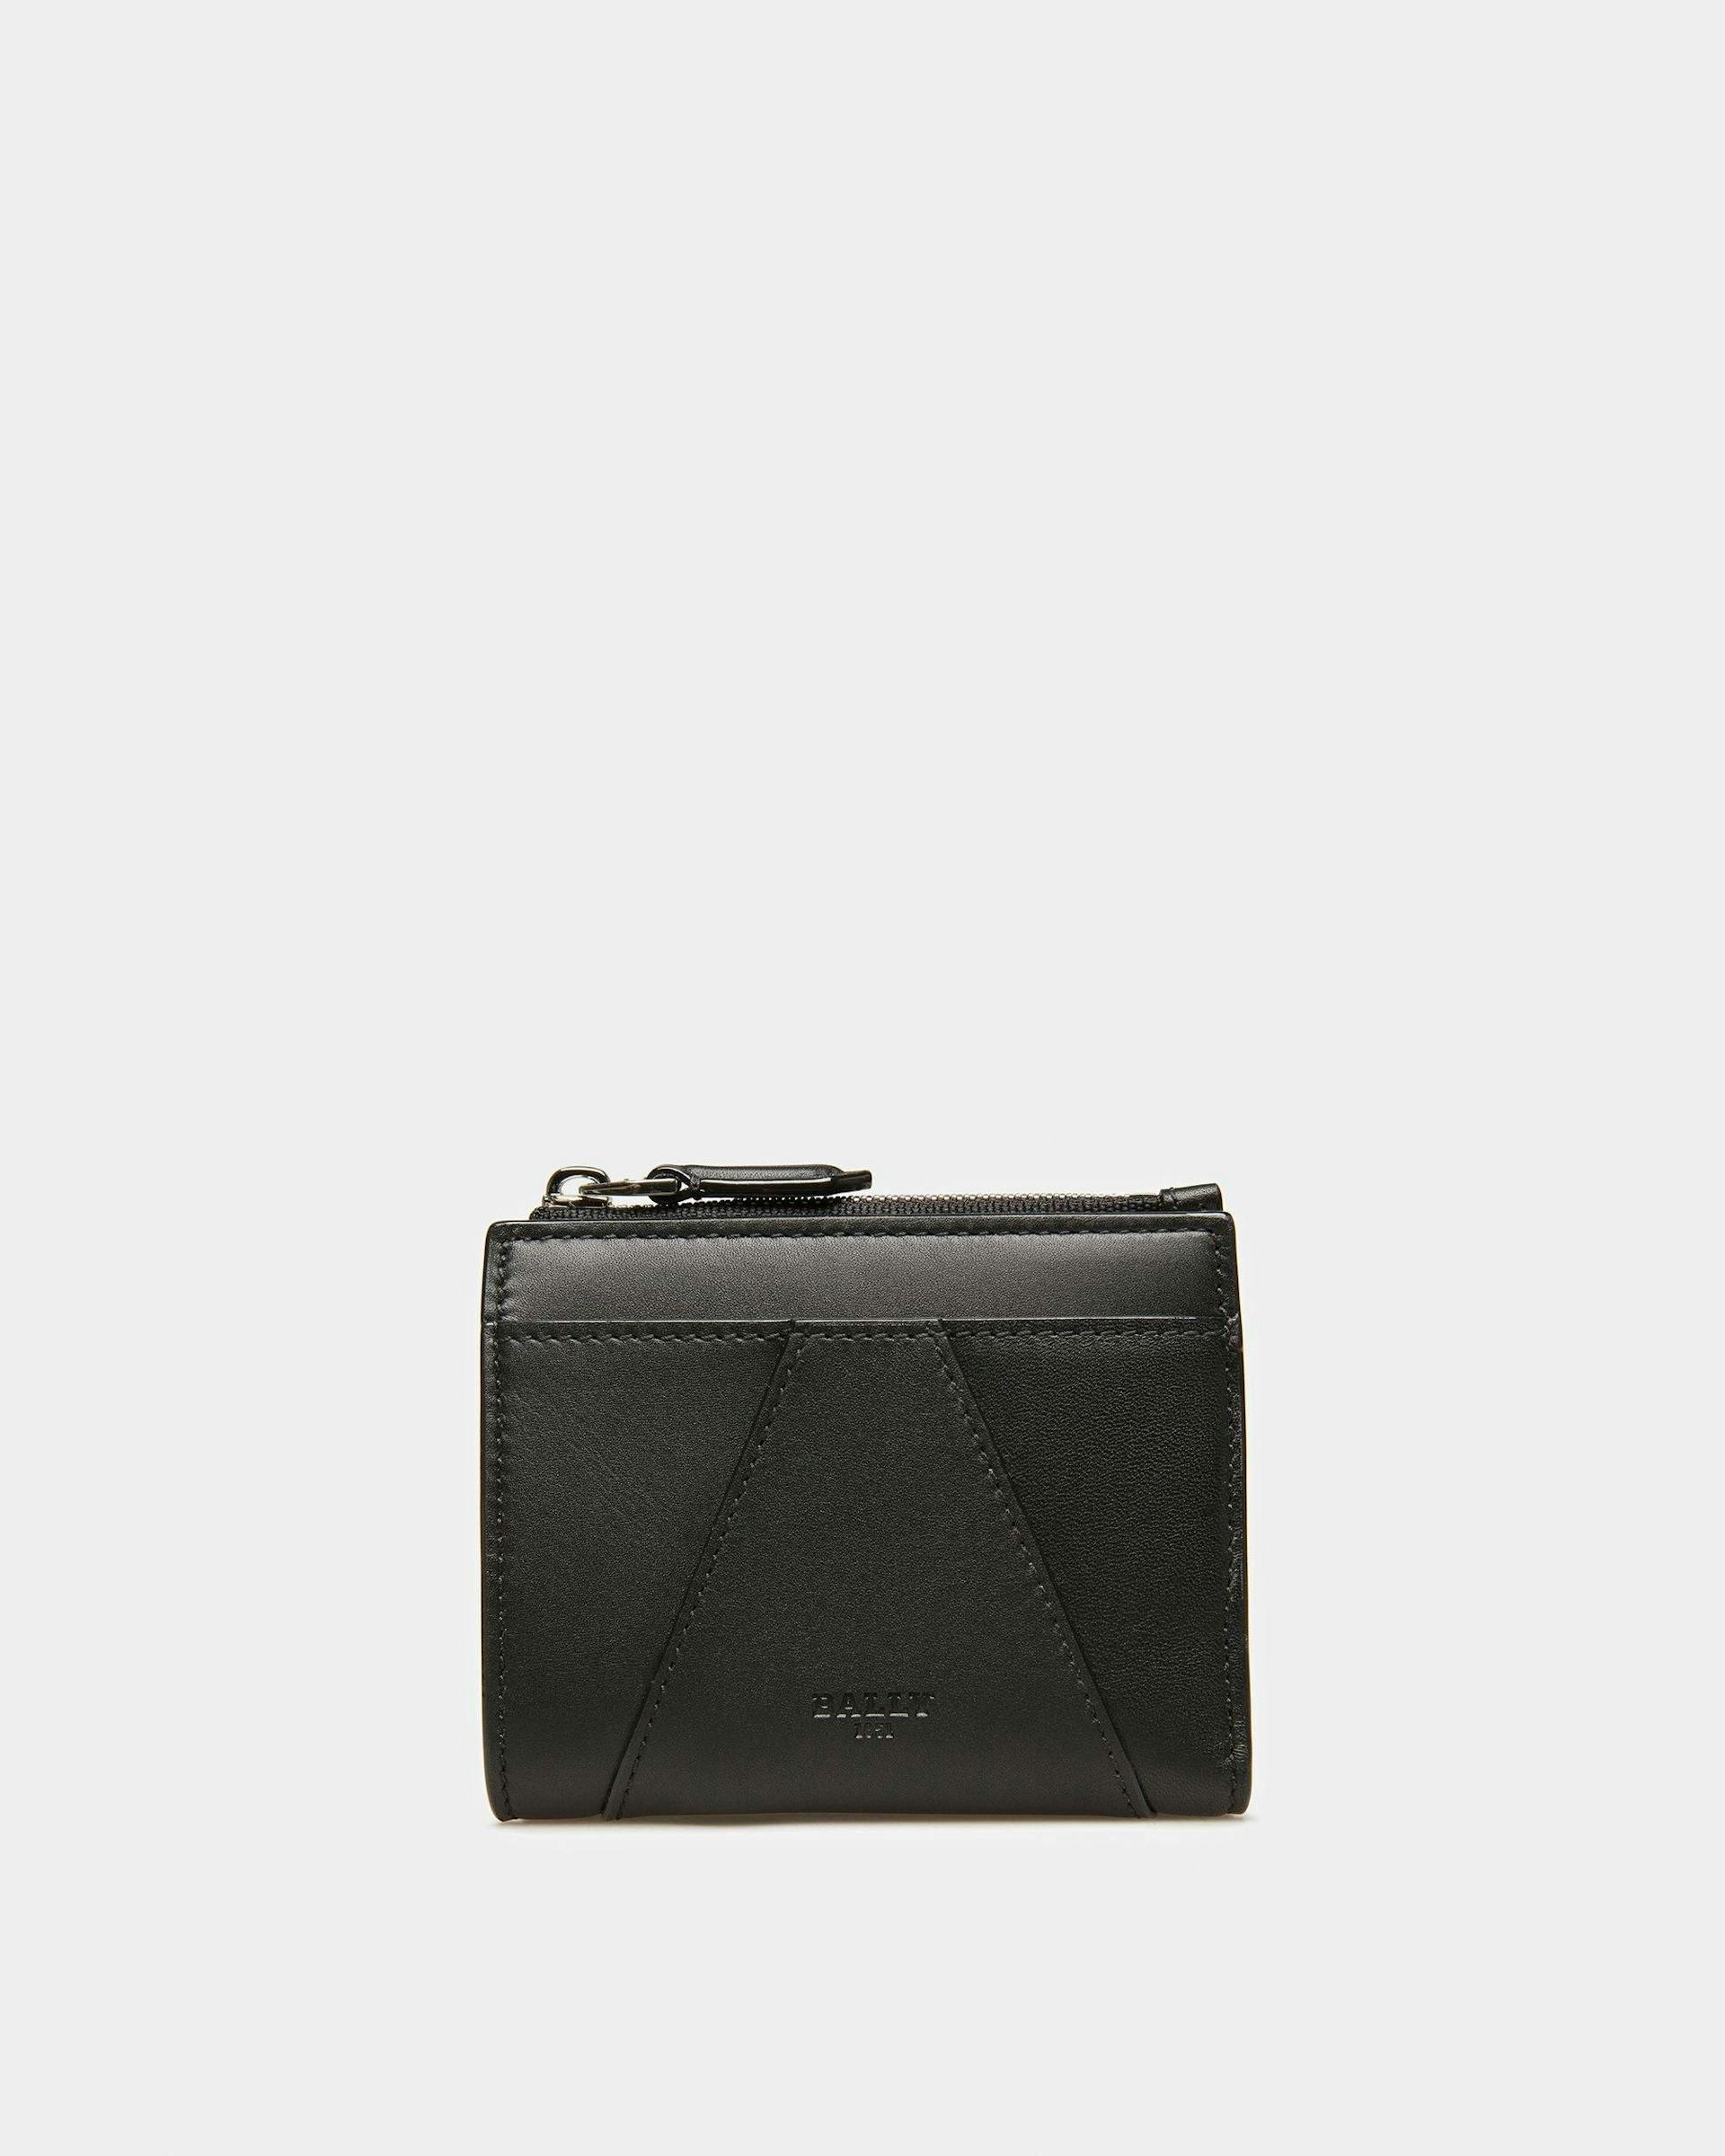 Axeel Leather Wallet In Black - Women's - Bally - 01